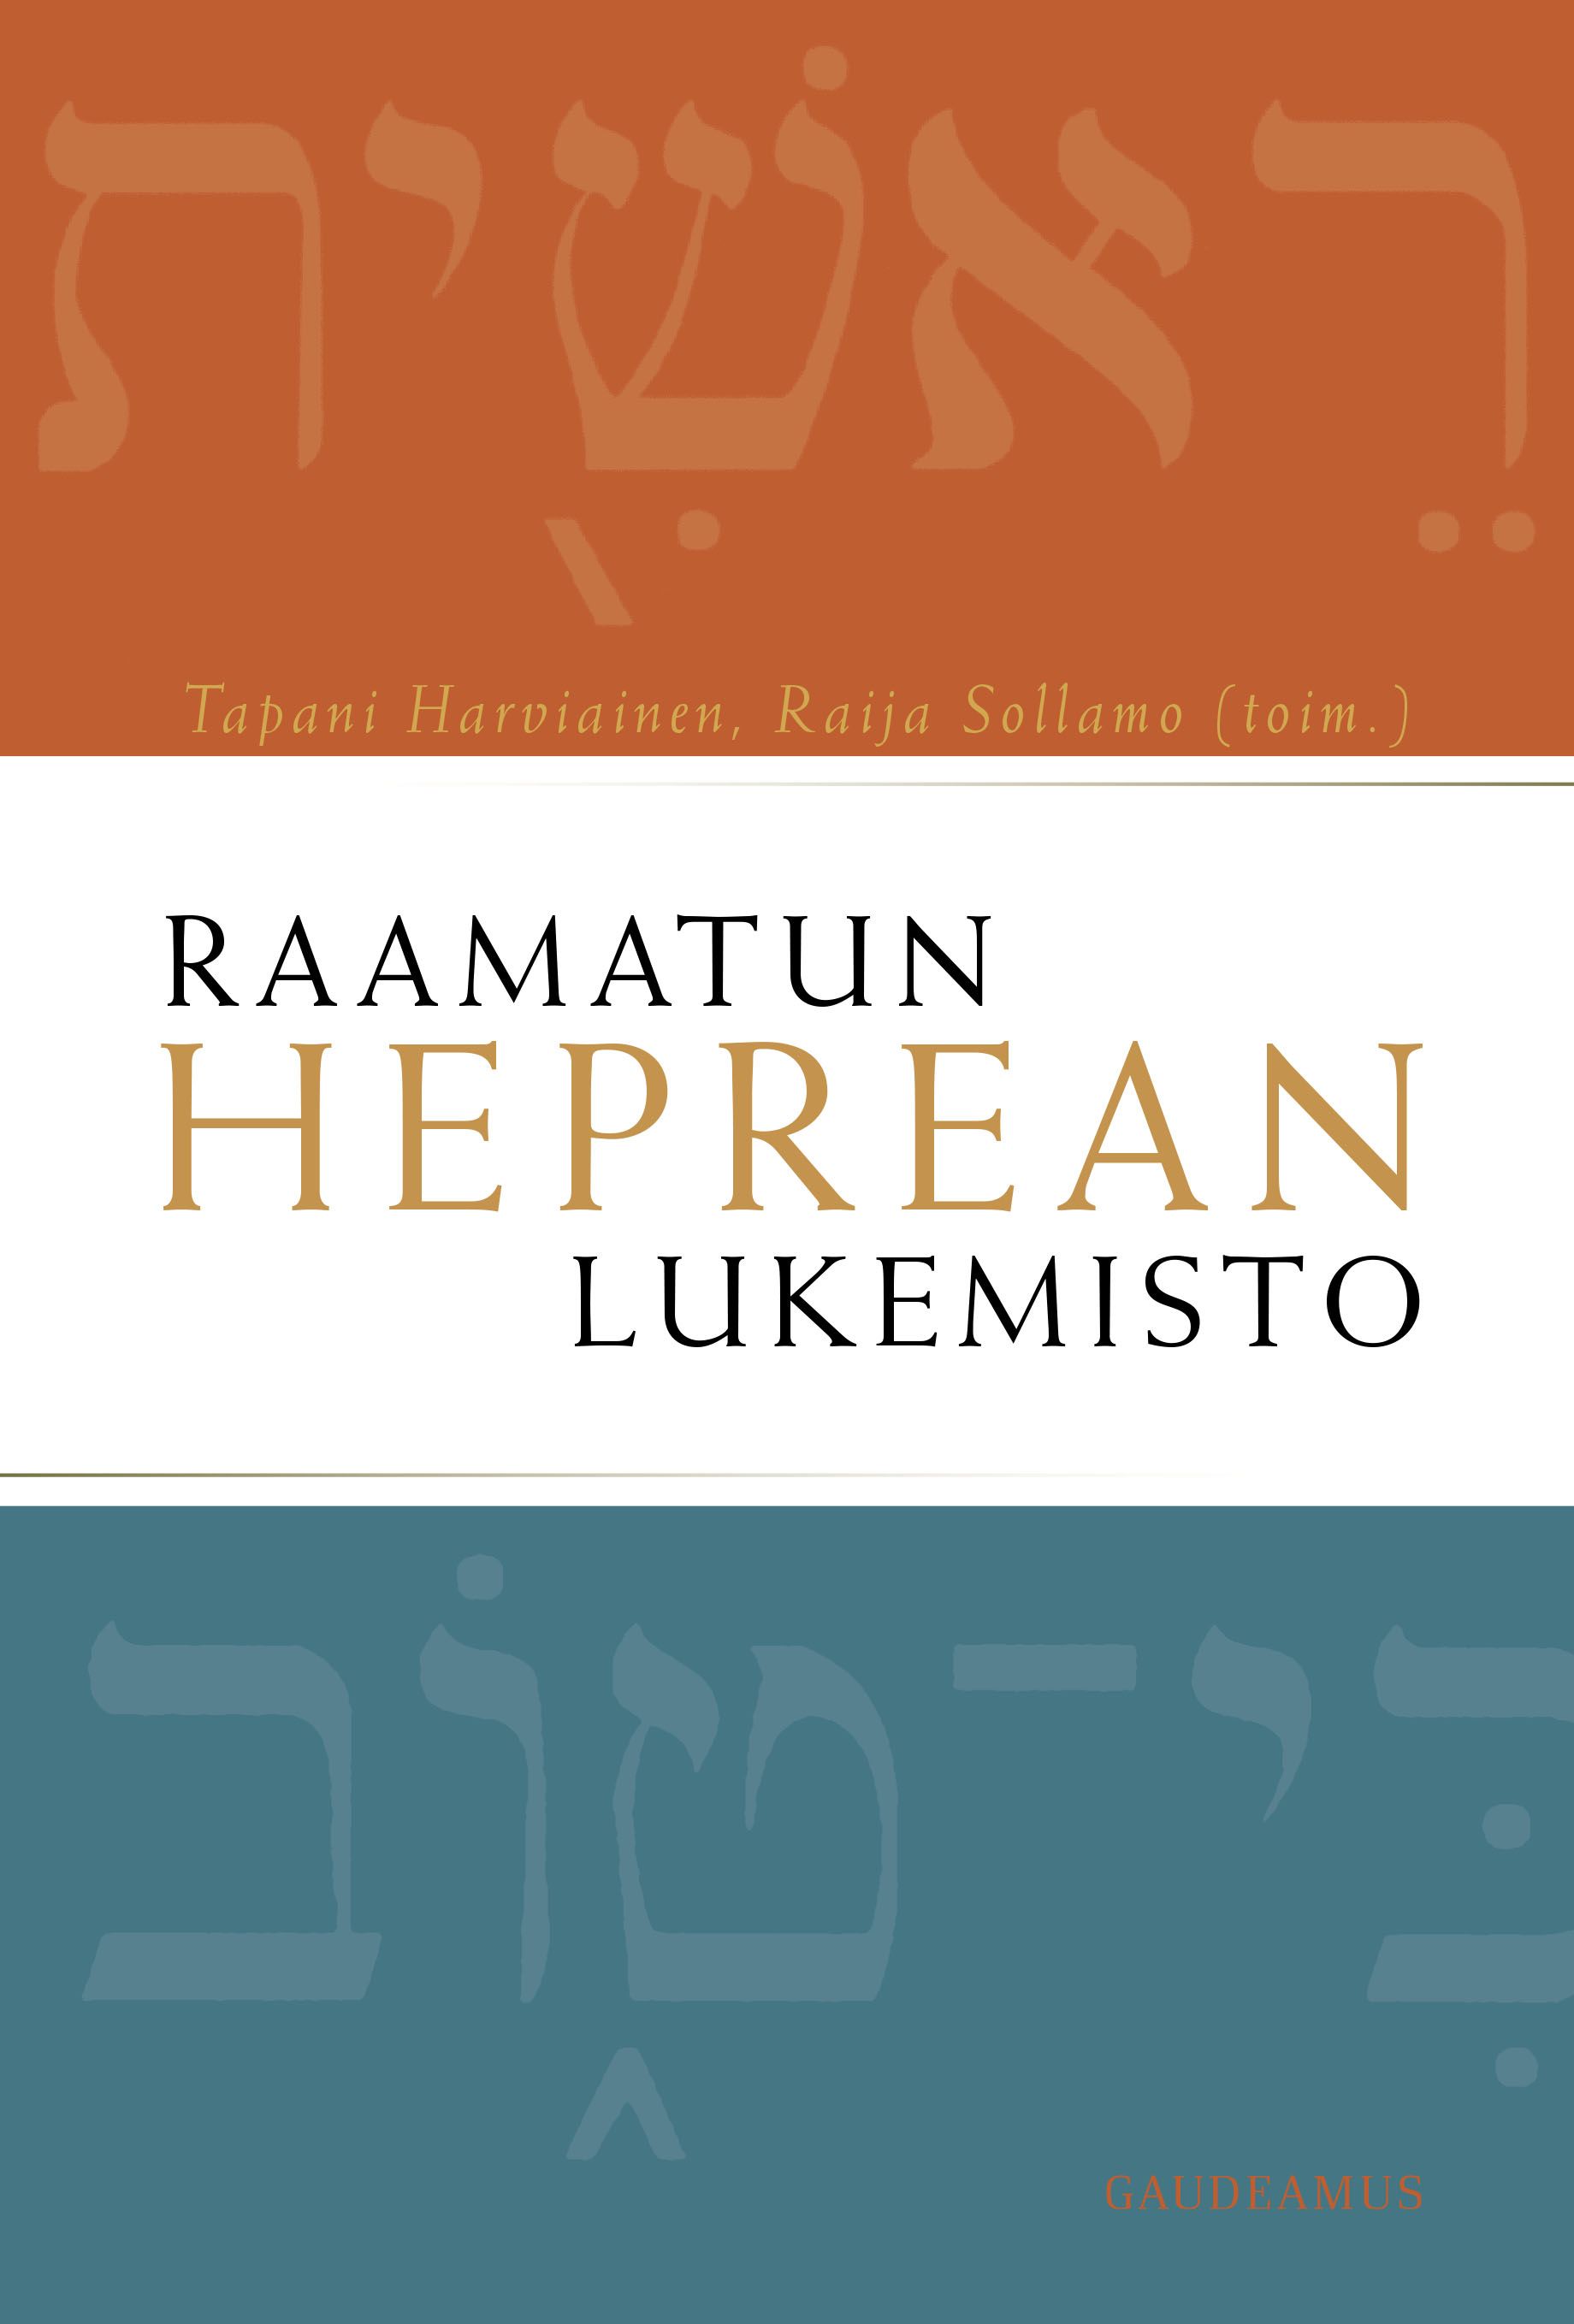 Raamatun heprean lukemisto | Gaudeamus verkkokauppa